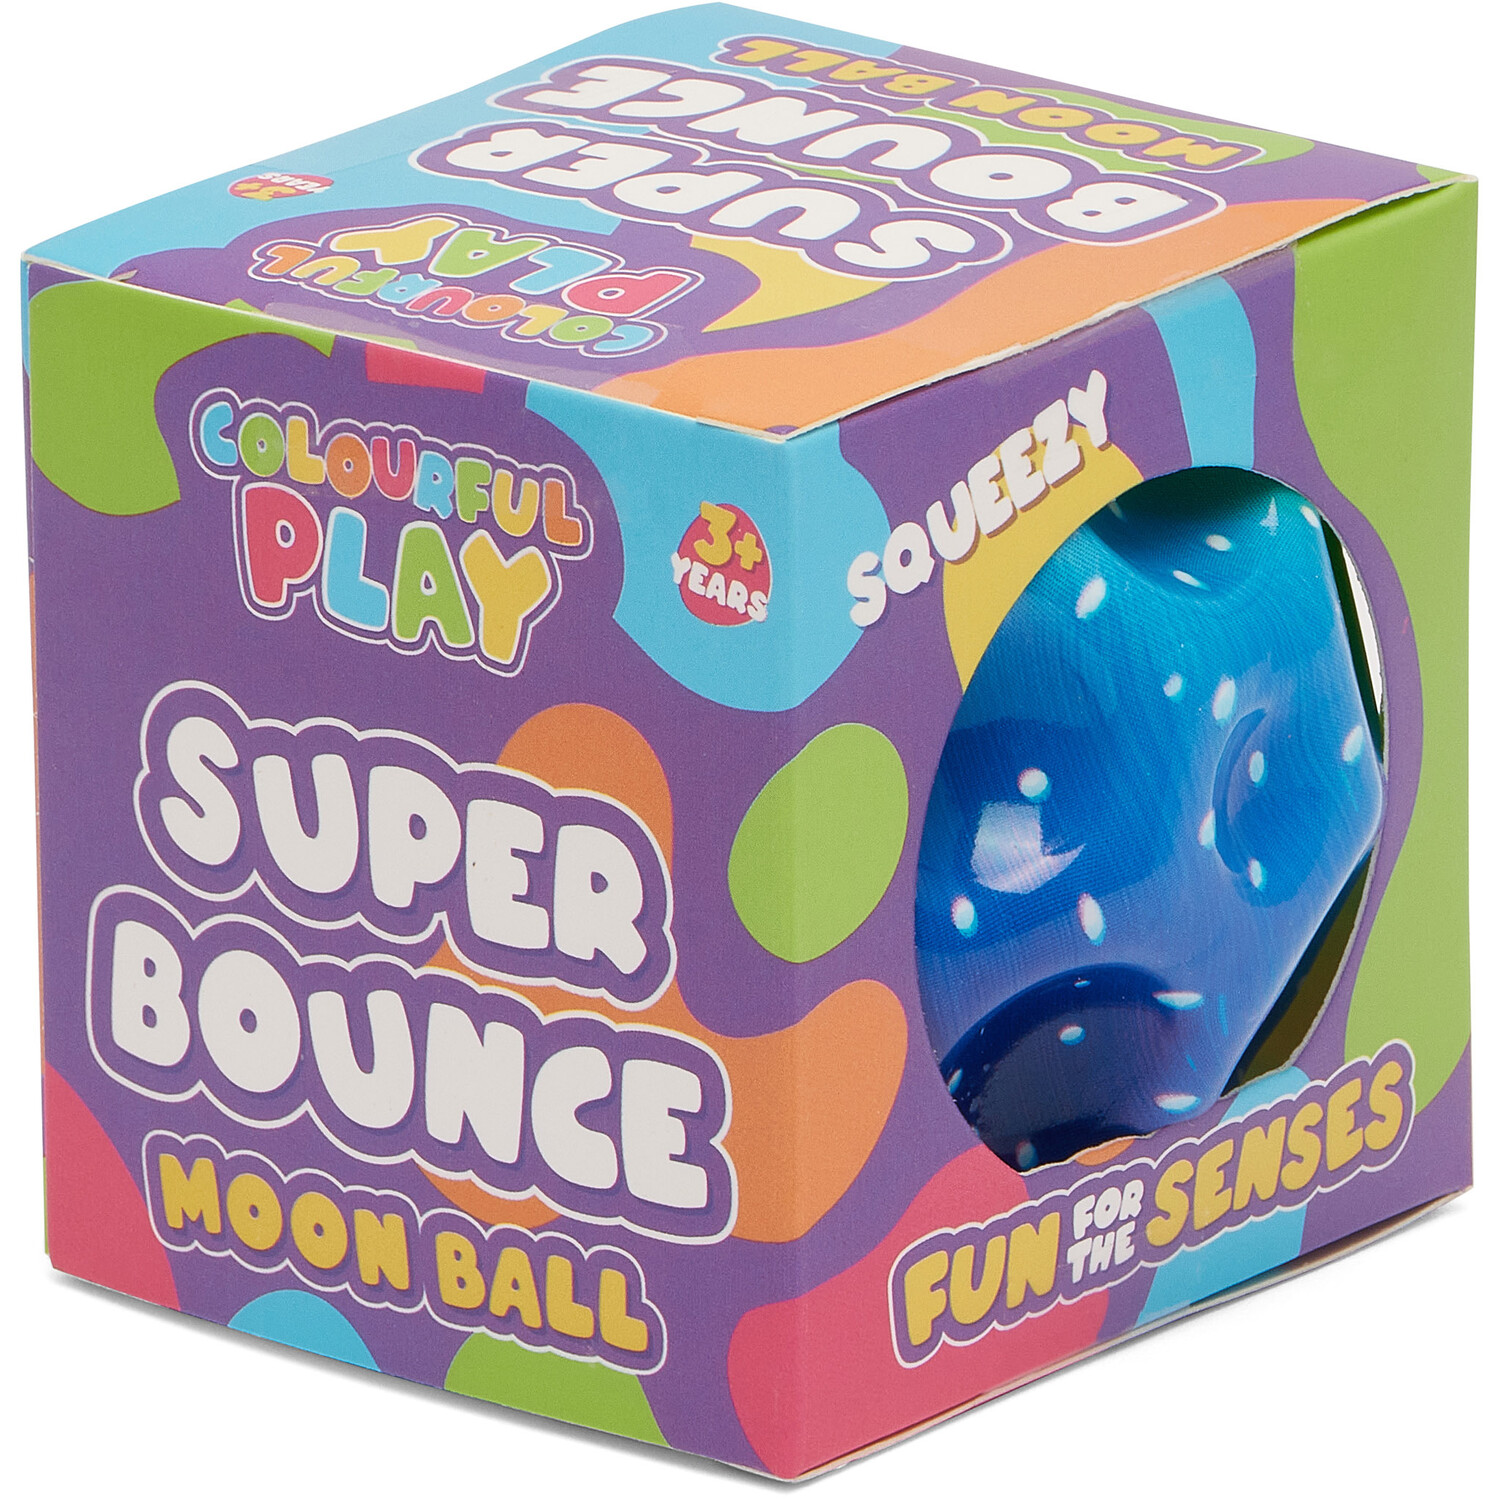 Super Bounce Moon Ball Image 3